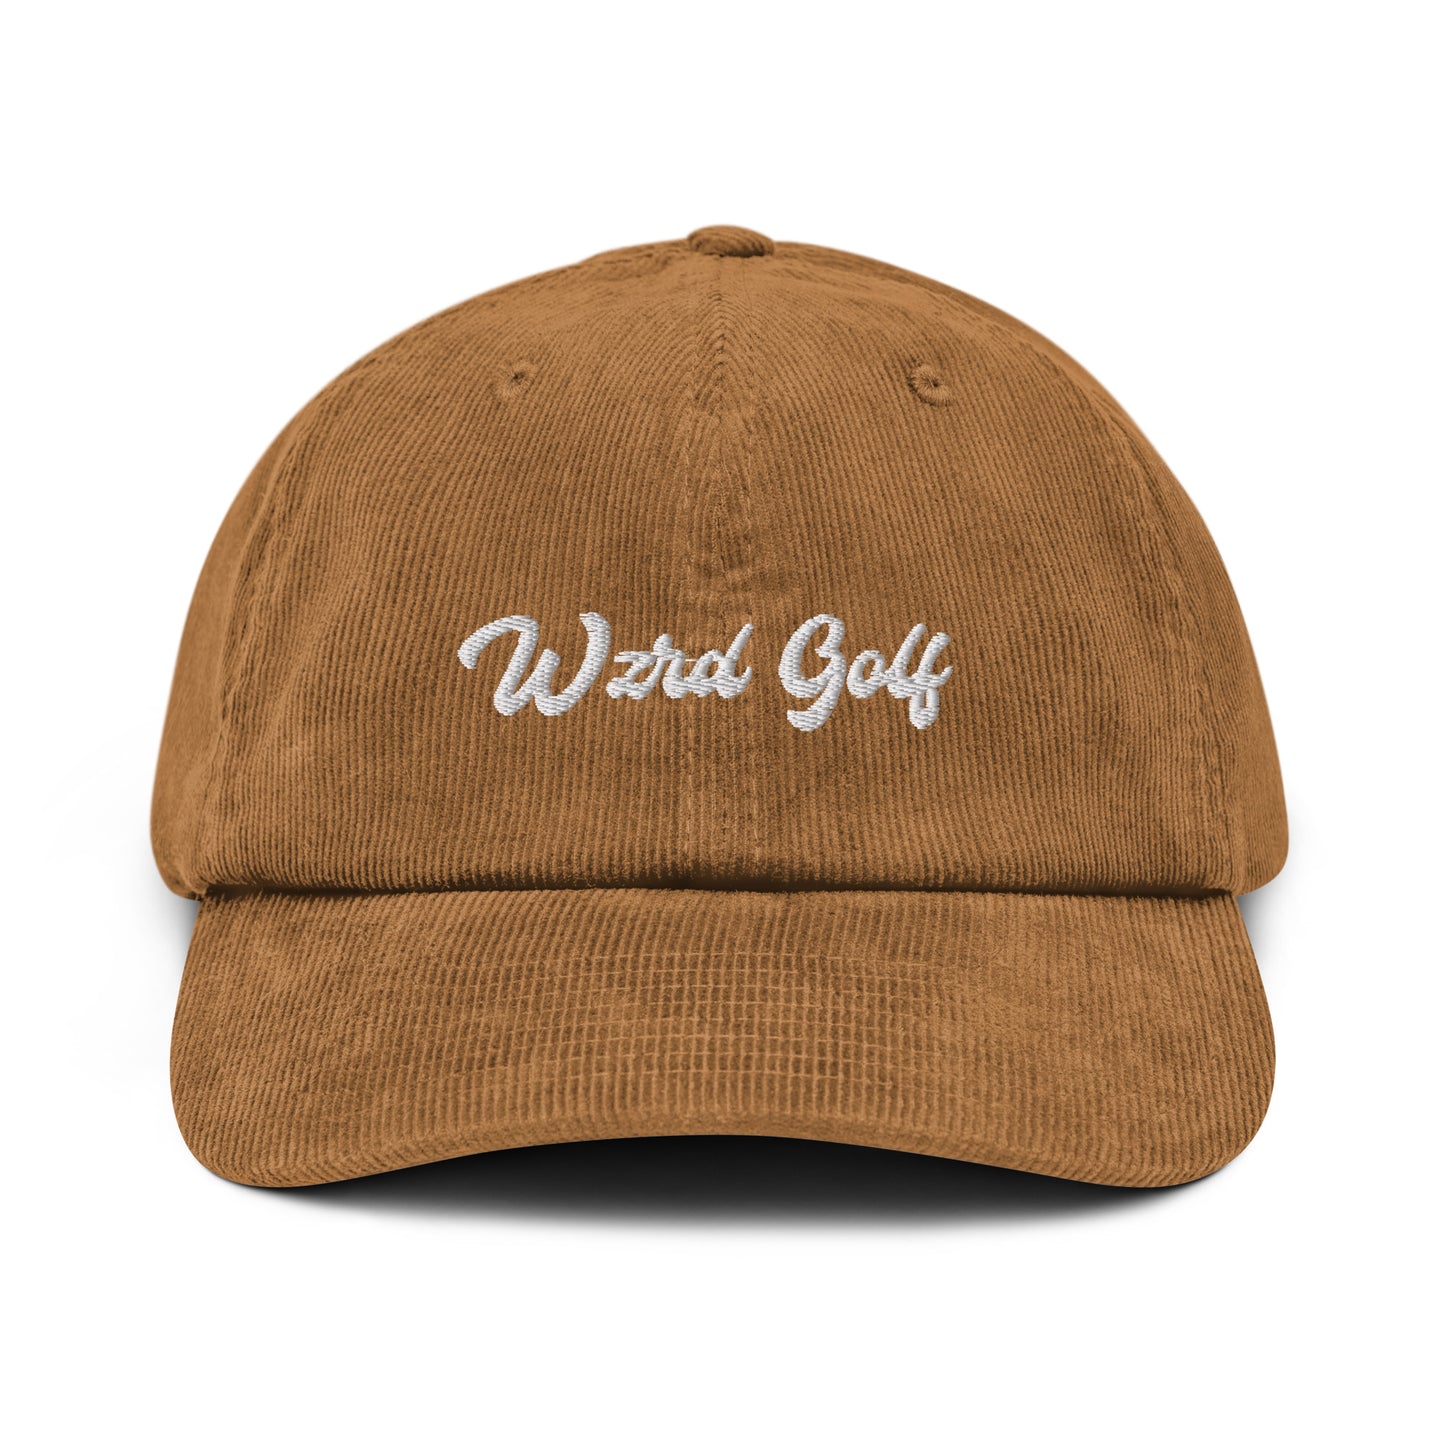 Corduroy Wzrd Golf Hat